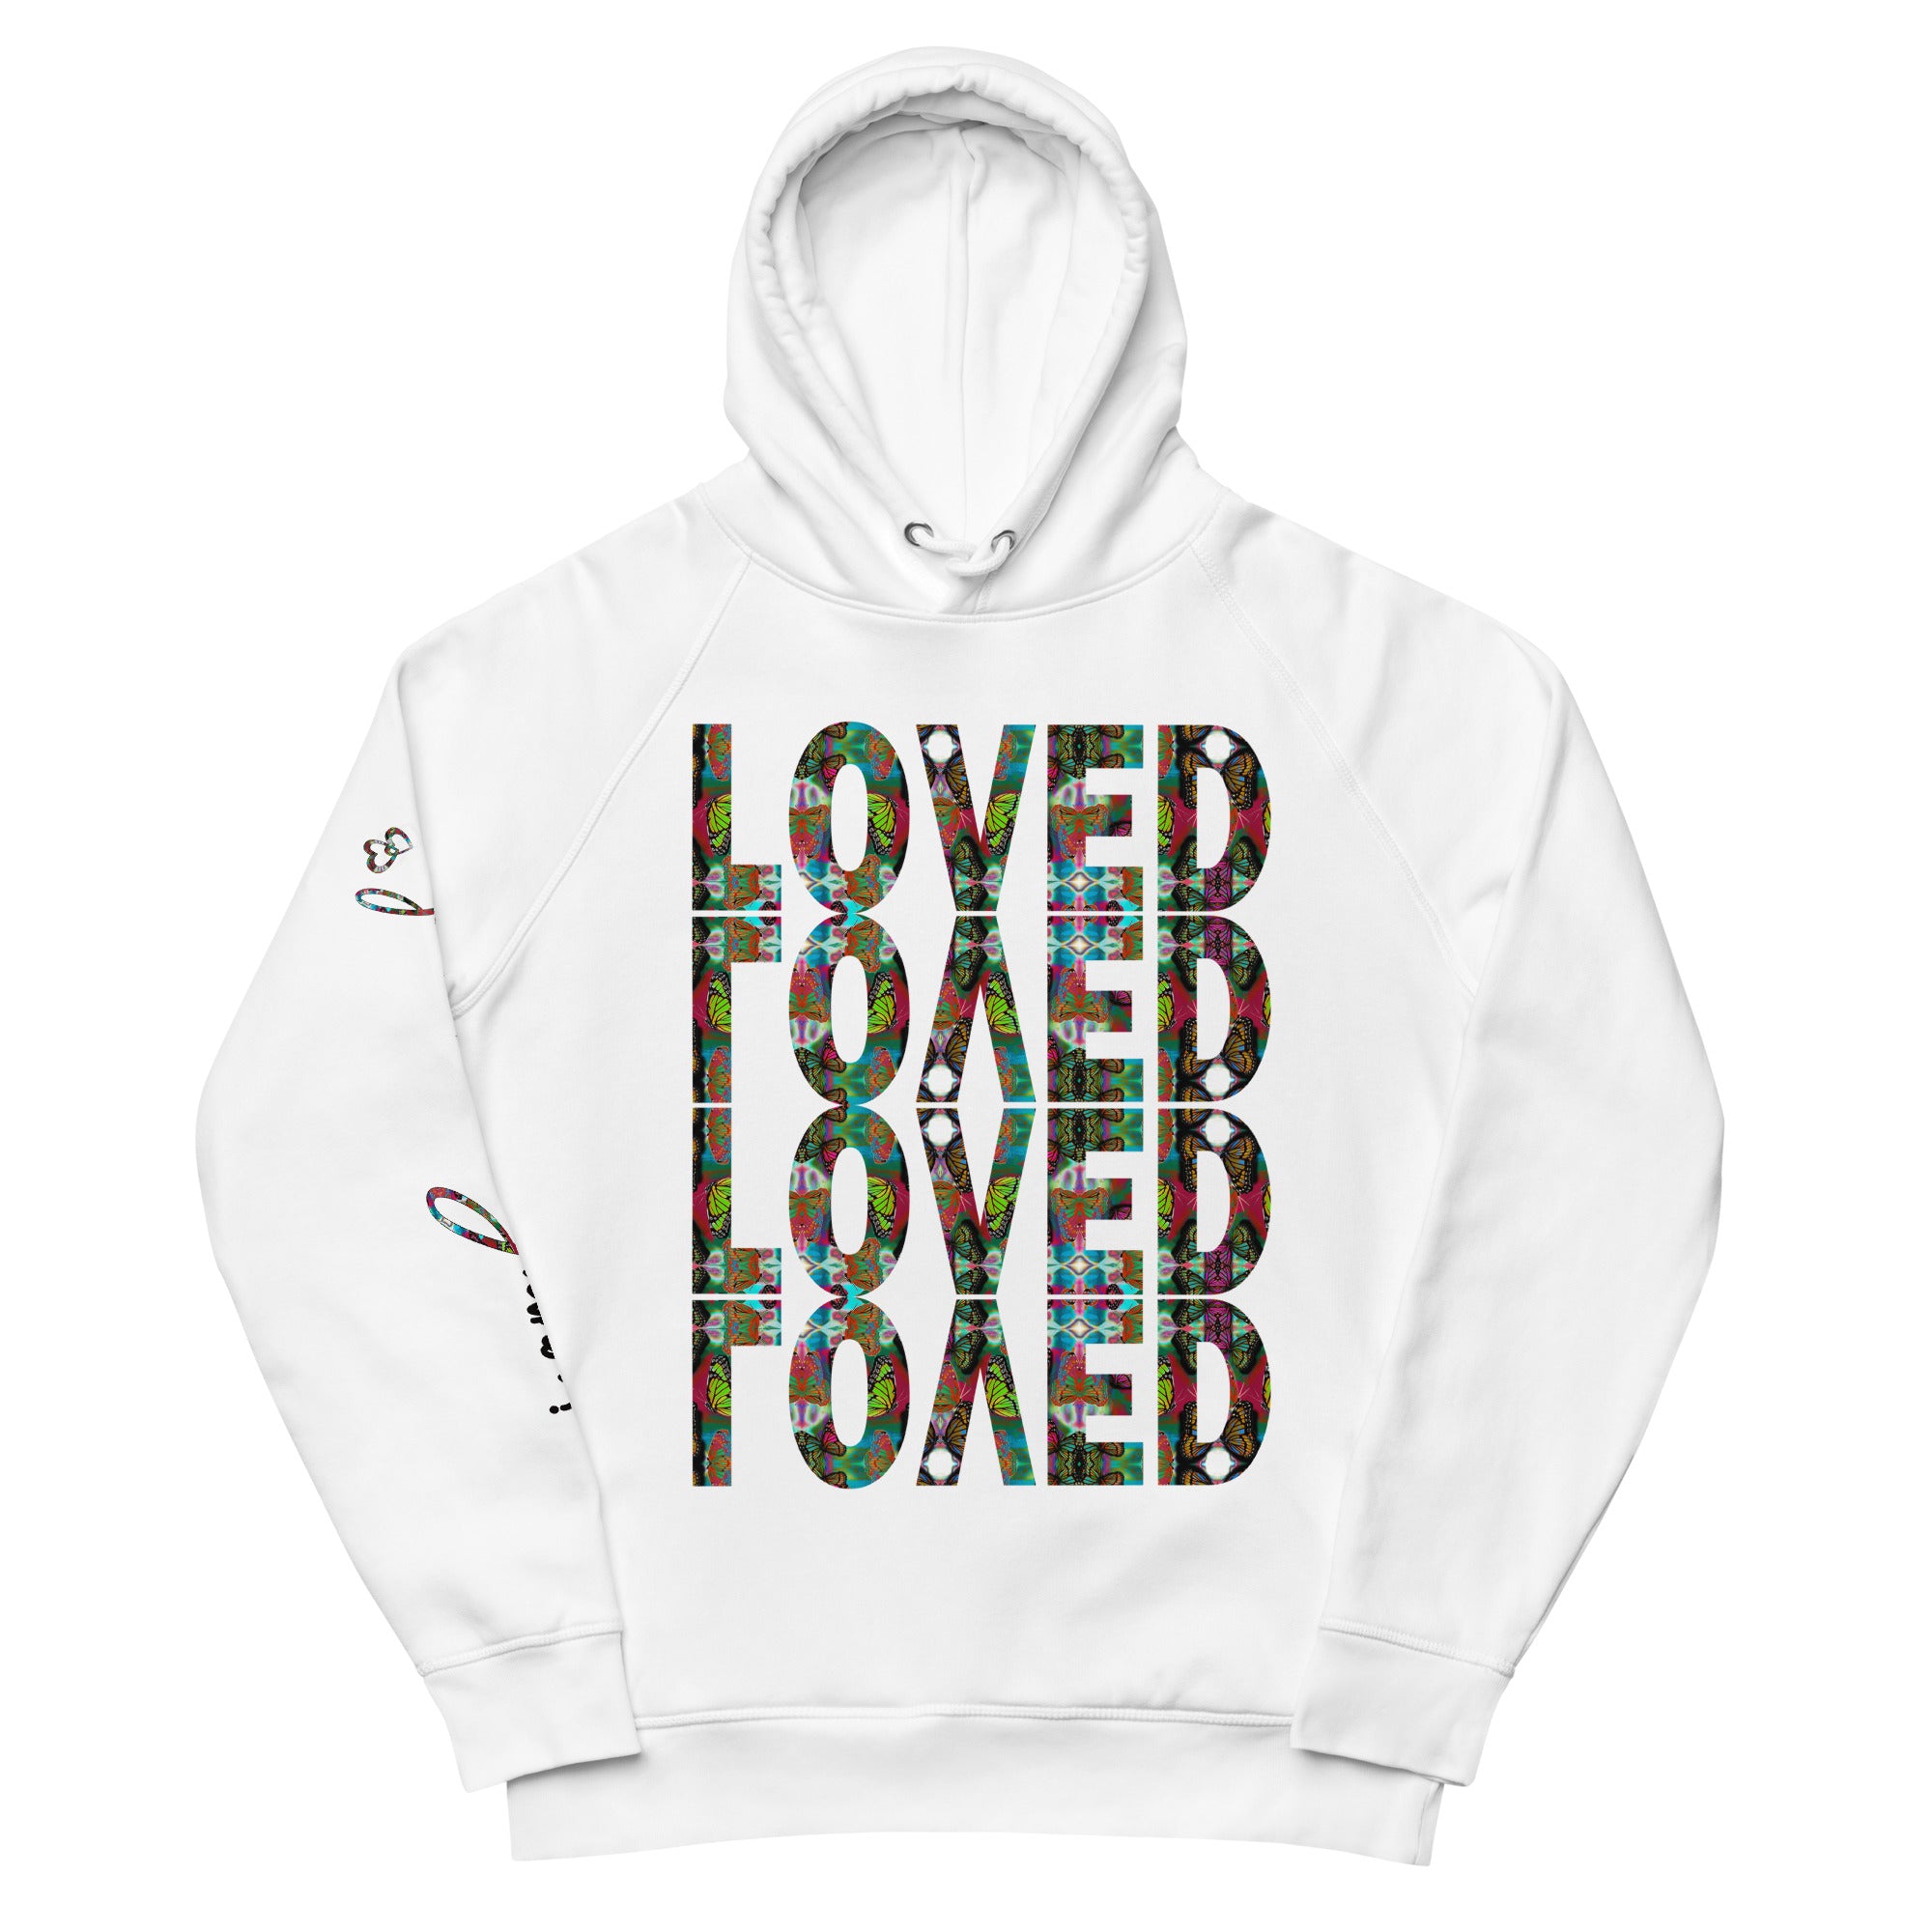 LOVED ~ I am loved Hoodie, Butterfly Word Art Sweatshirt, Black or White